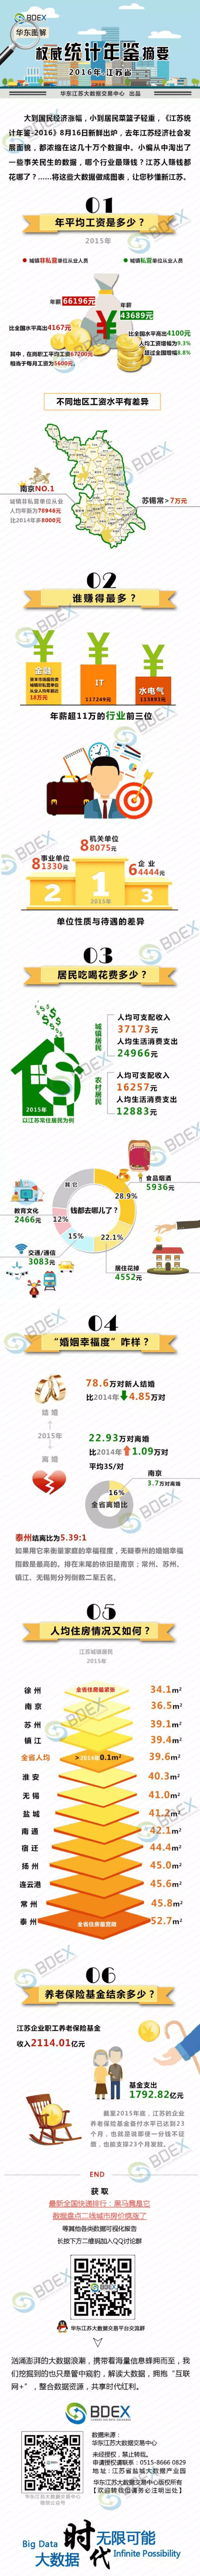 2016年权威统计年鉴摘要让你秒懂新江苏.png